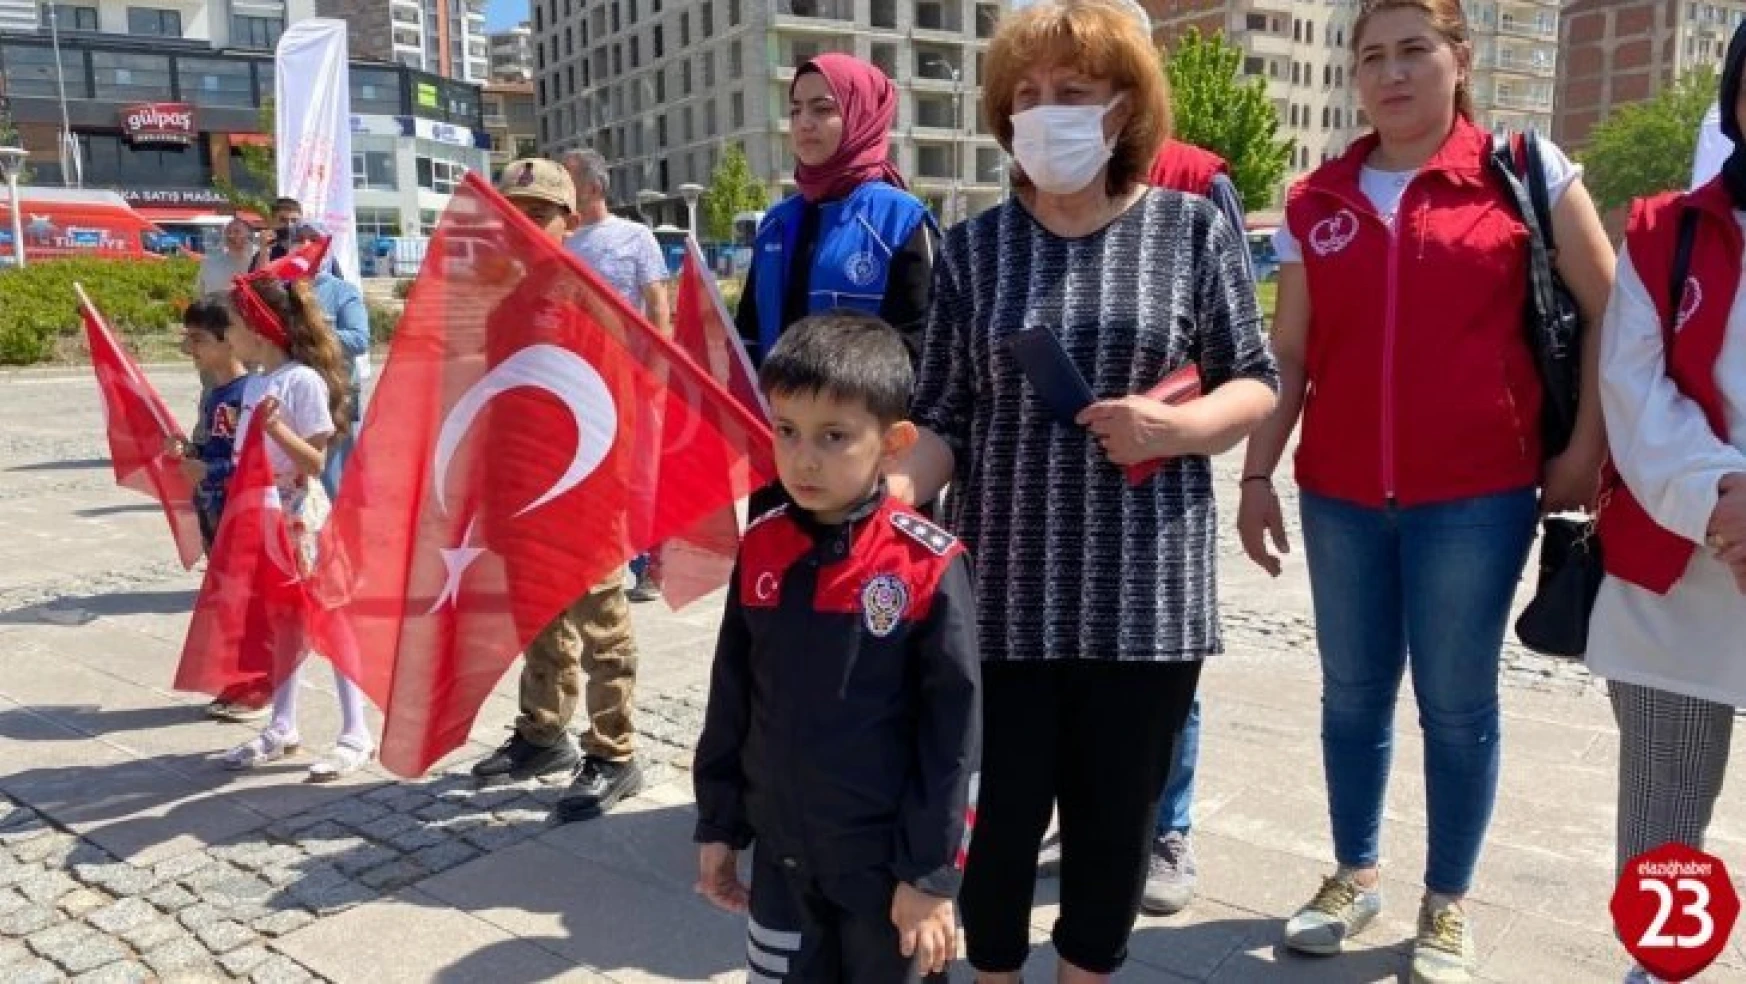 Elazığ'da 19 Mayıs Atatürk'ü Anma, Gençlik ve Spor Bayramı etkinlikleri